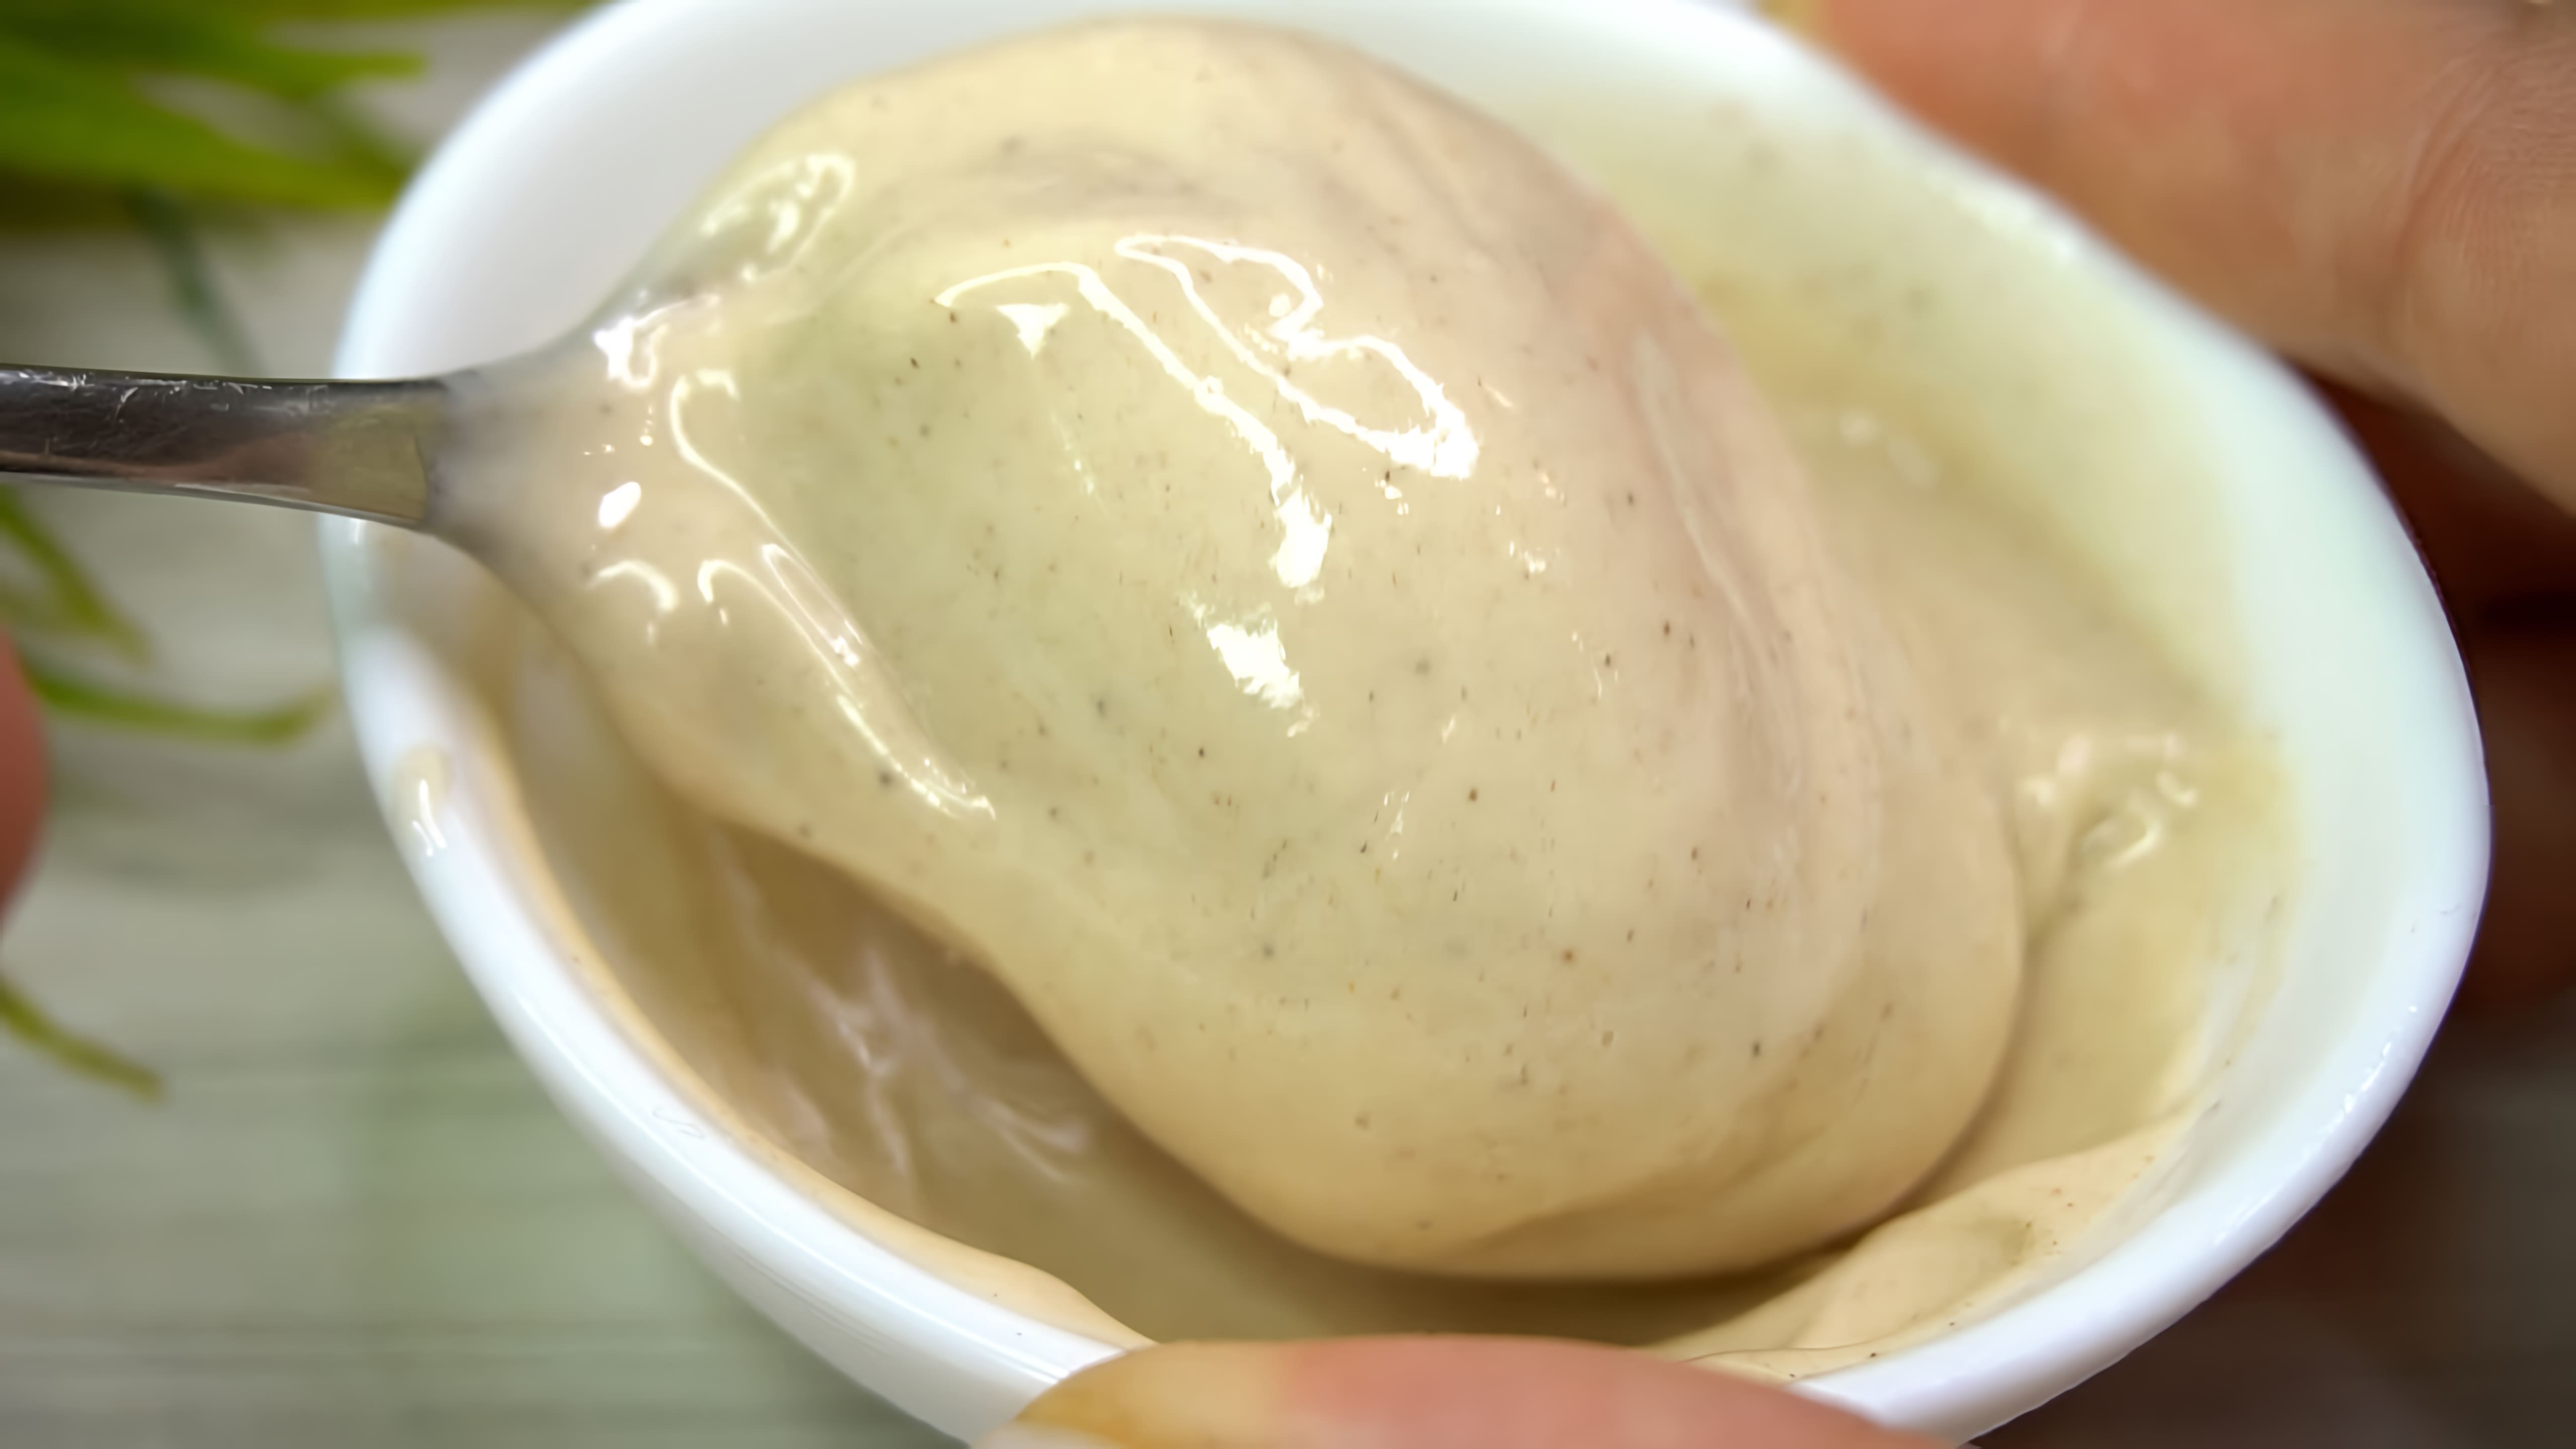 В этом видео демонстрируется рецепт приготовления знаменитого крем-меда